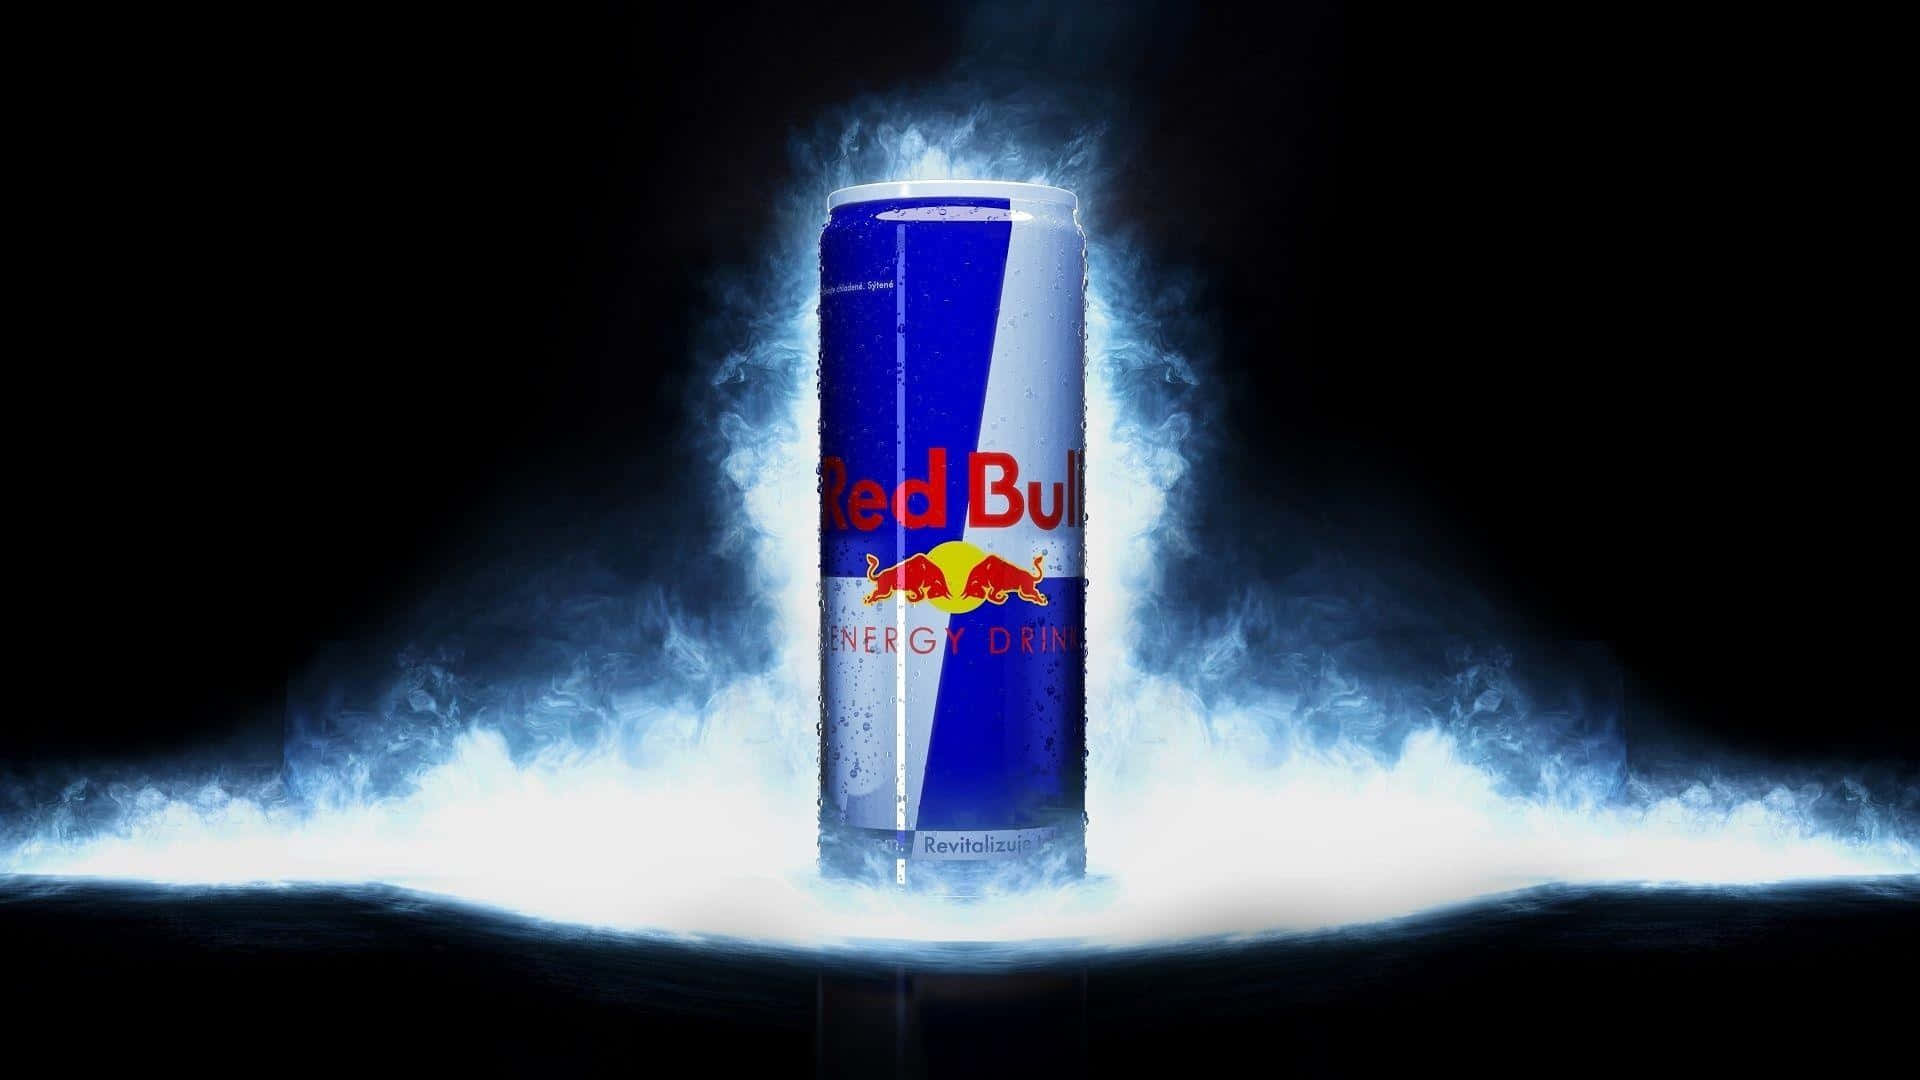 Vågnop Og Bliv Energiseret Med En Red Bull!